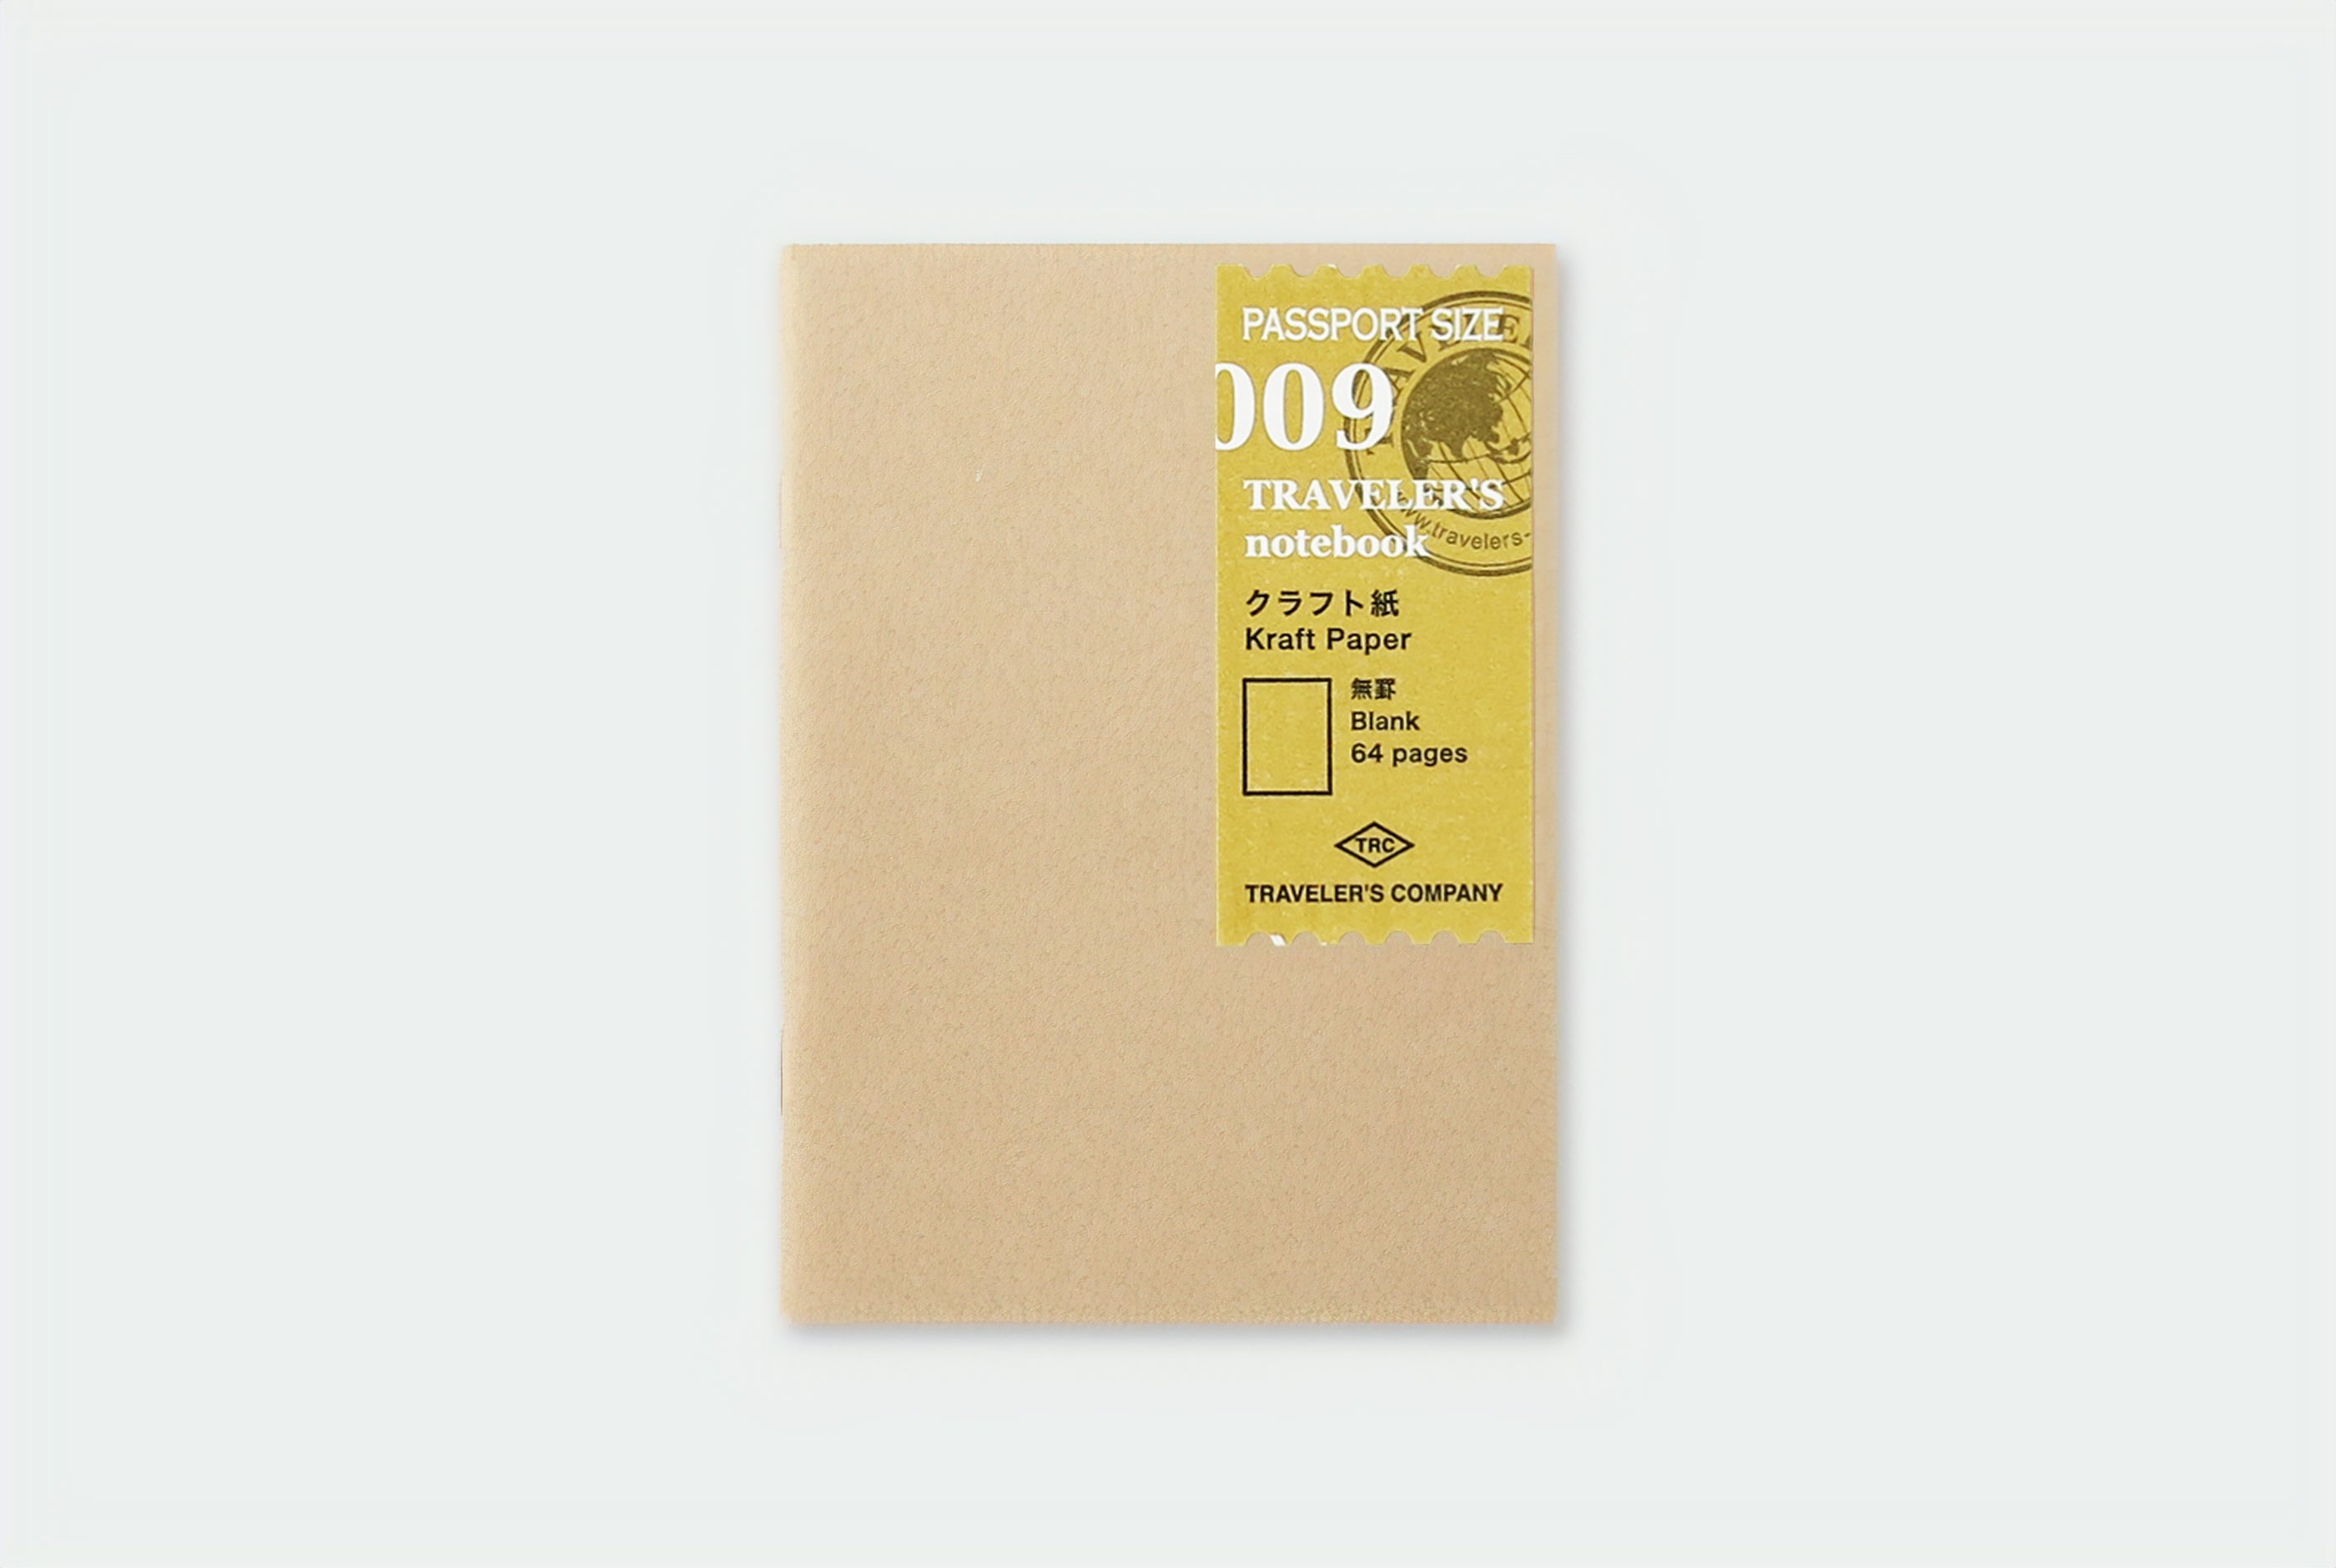 TRAVELER'S notebook Passport Size - 009. Kraft Paper Refill